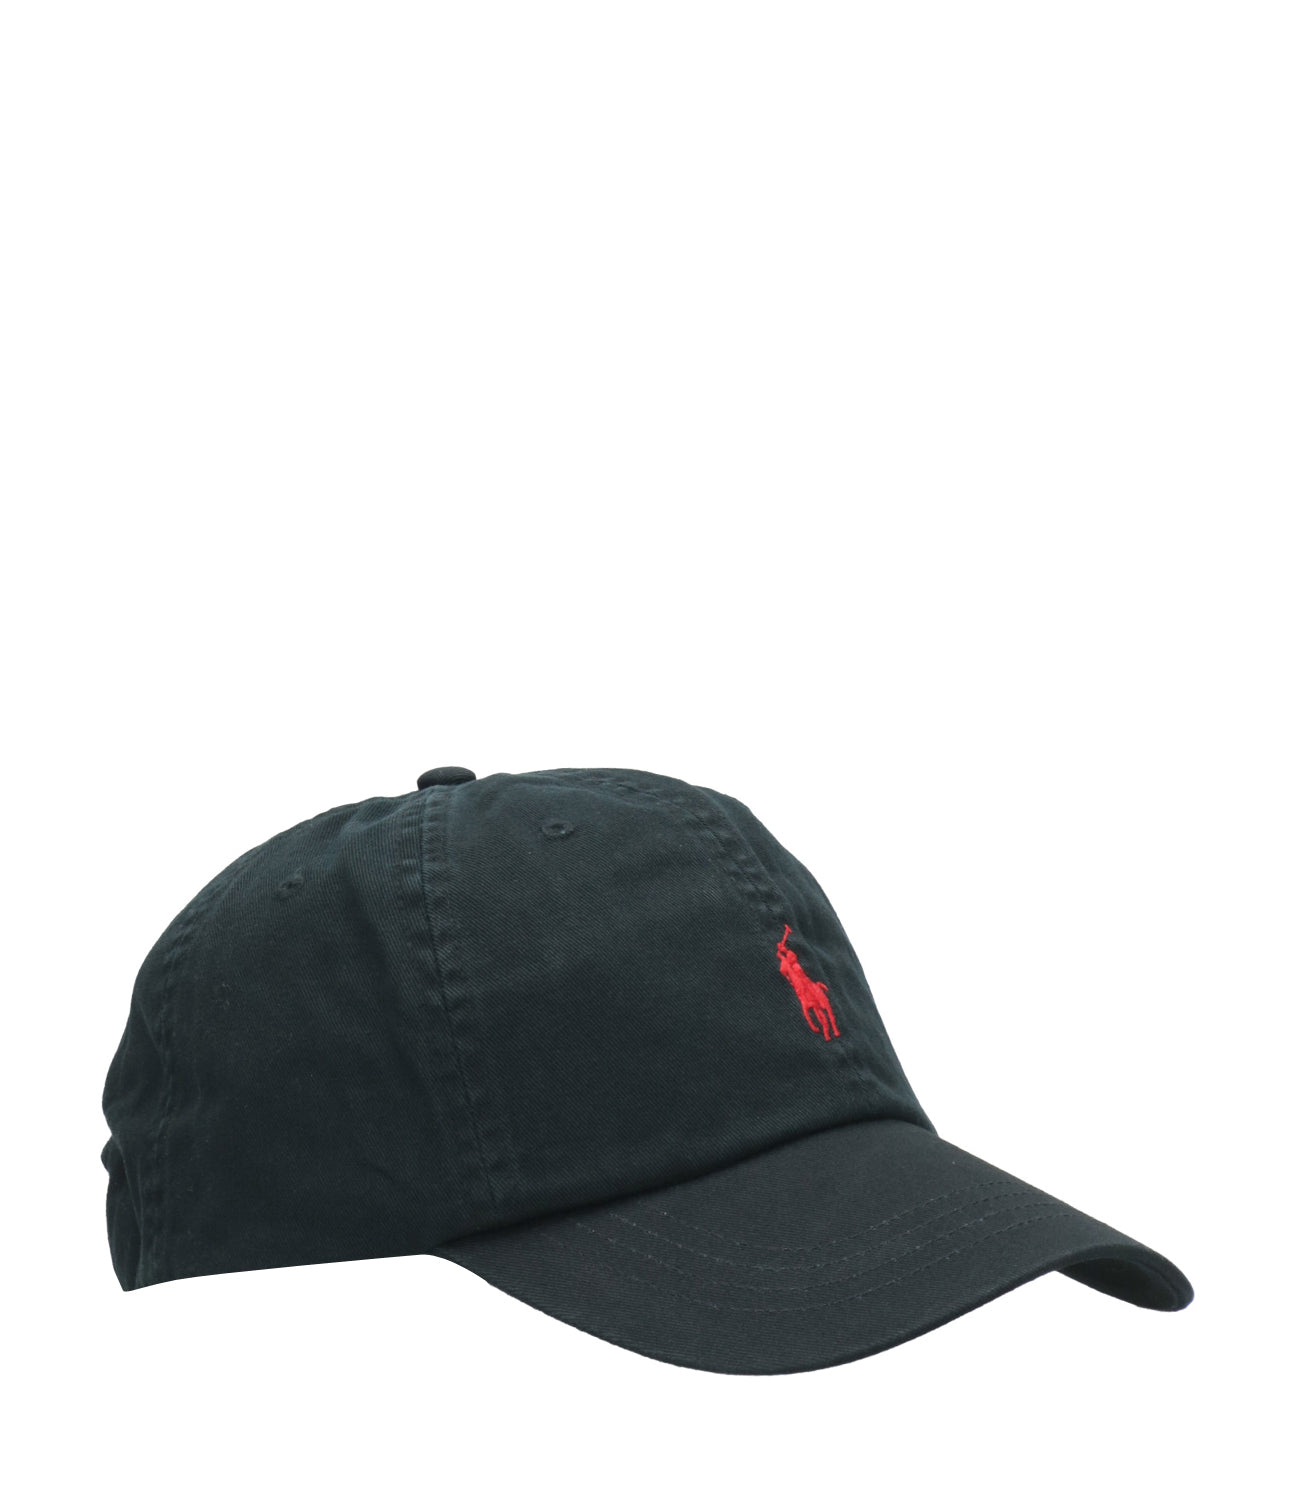 Polo Ralph Lauren | Black Hat